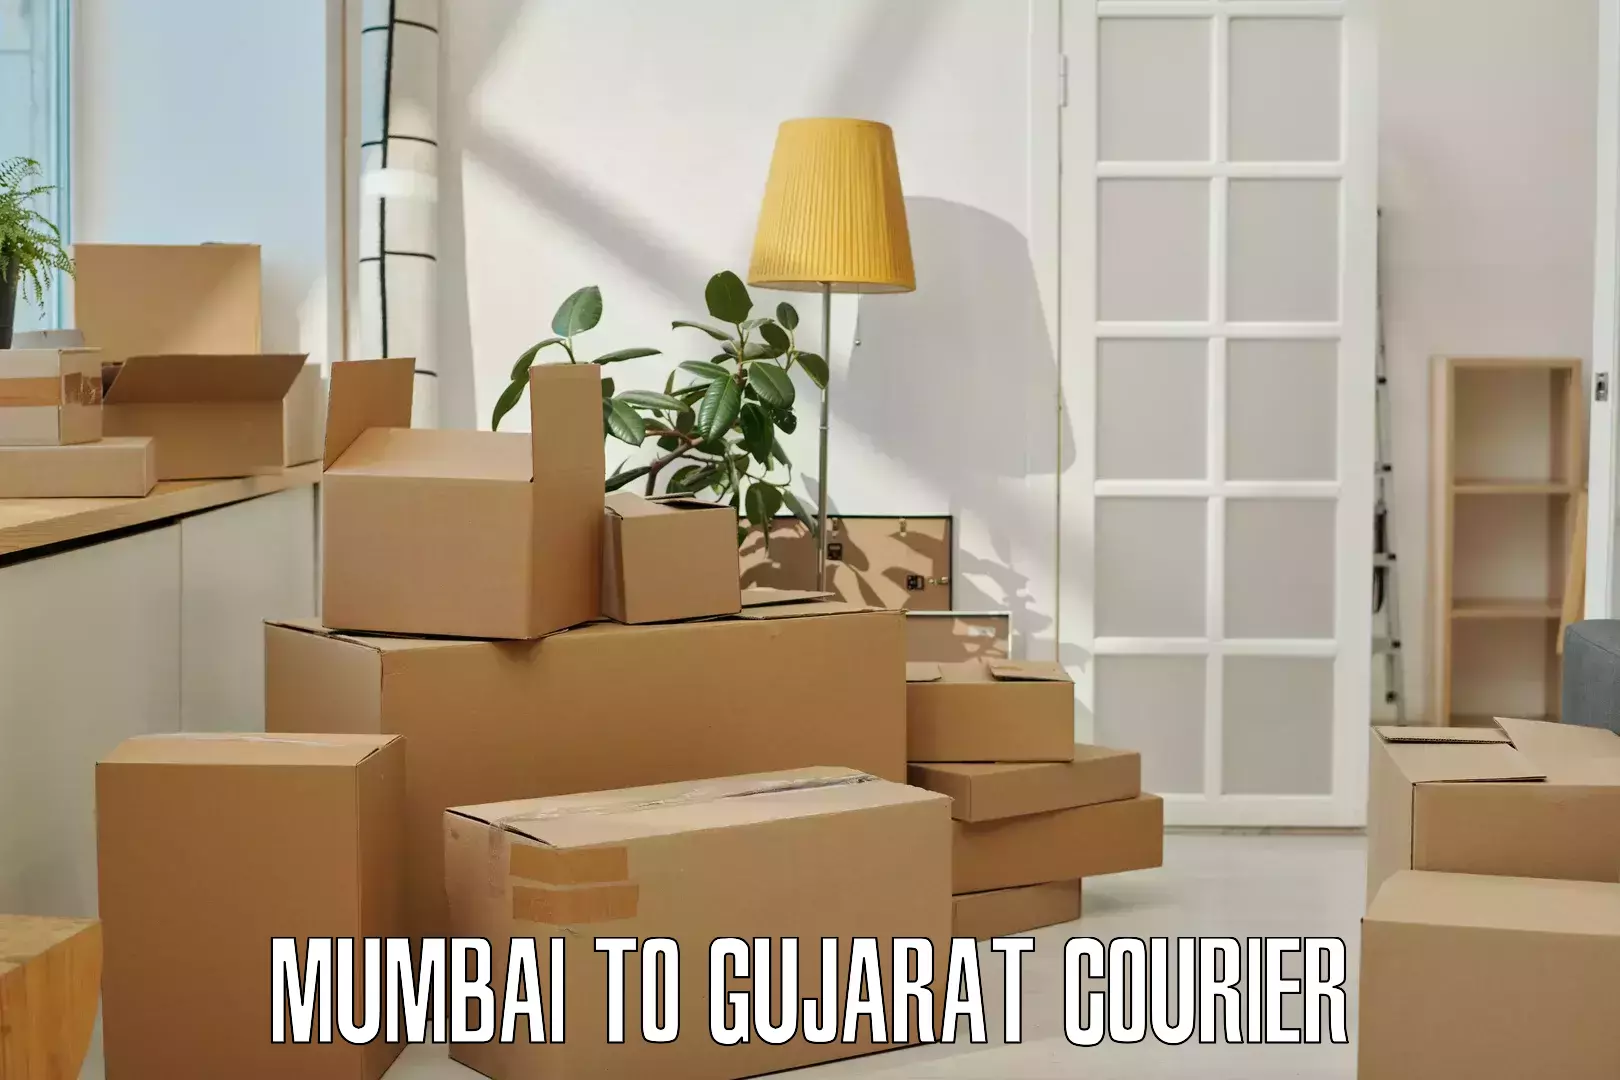 Package tracking in Mumbai to Gujarat